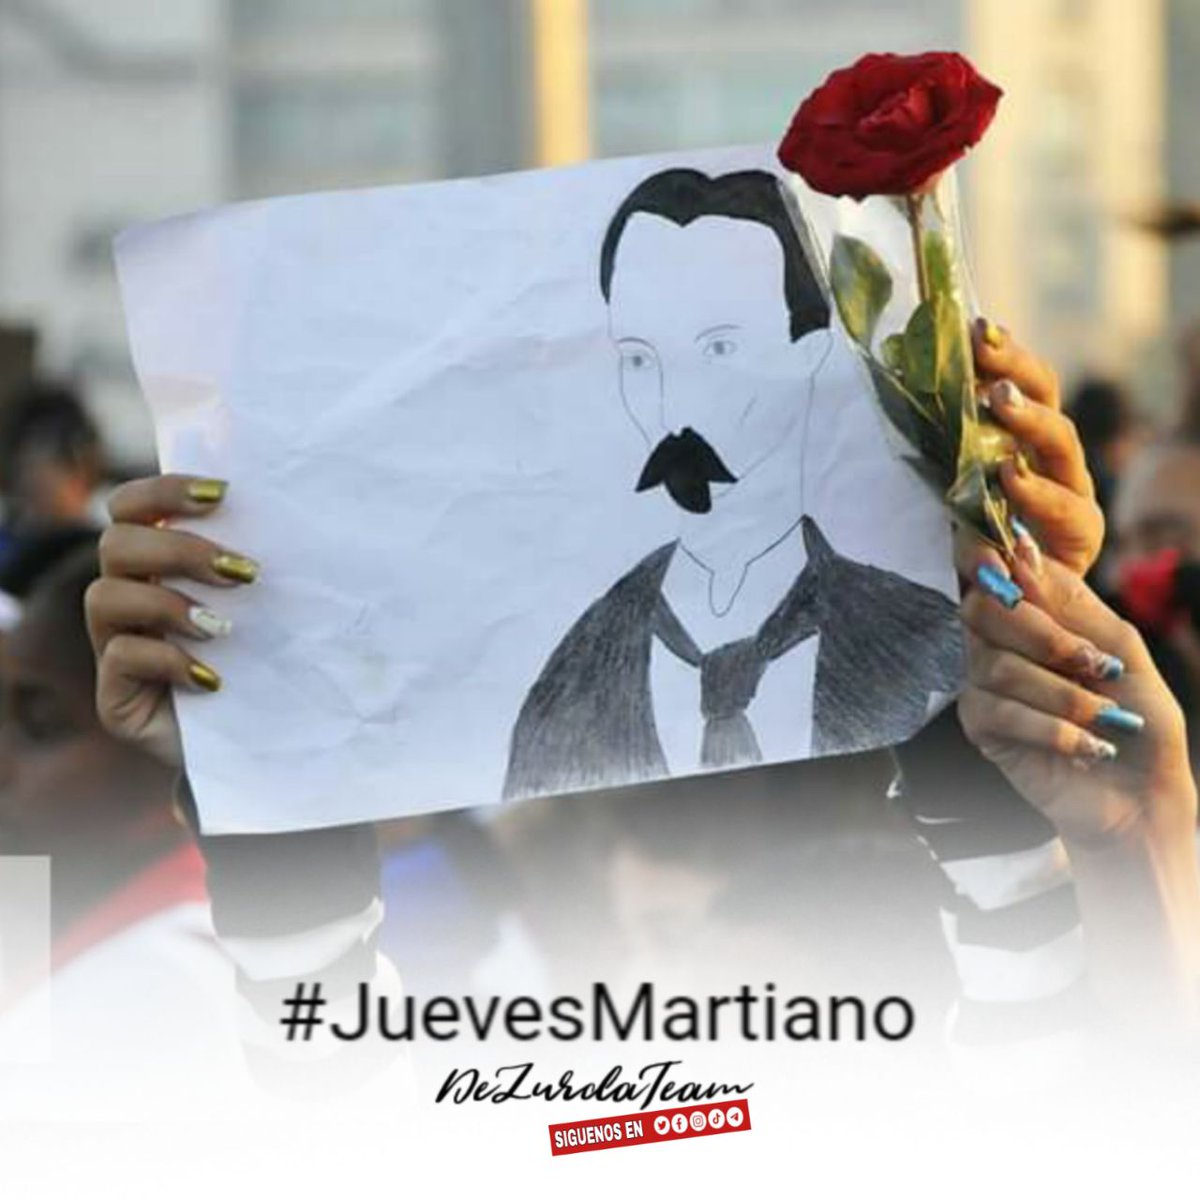 #JuevesMartiano 'Las verdades elementales caben en el ala de un colibrí'.

#DeZurdaTeam🐊🐊🐊 
#AmigosDeFidel
#CubaViva